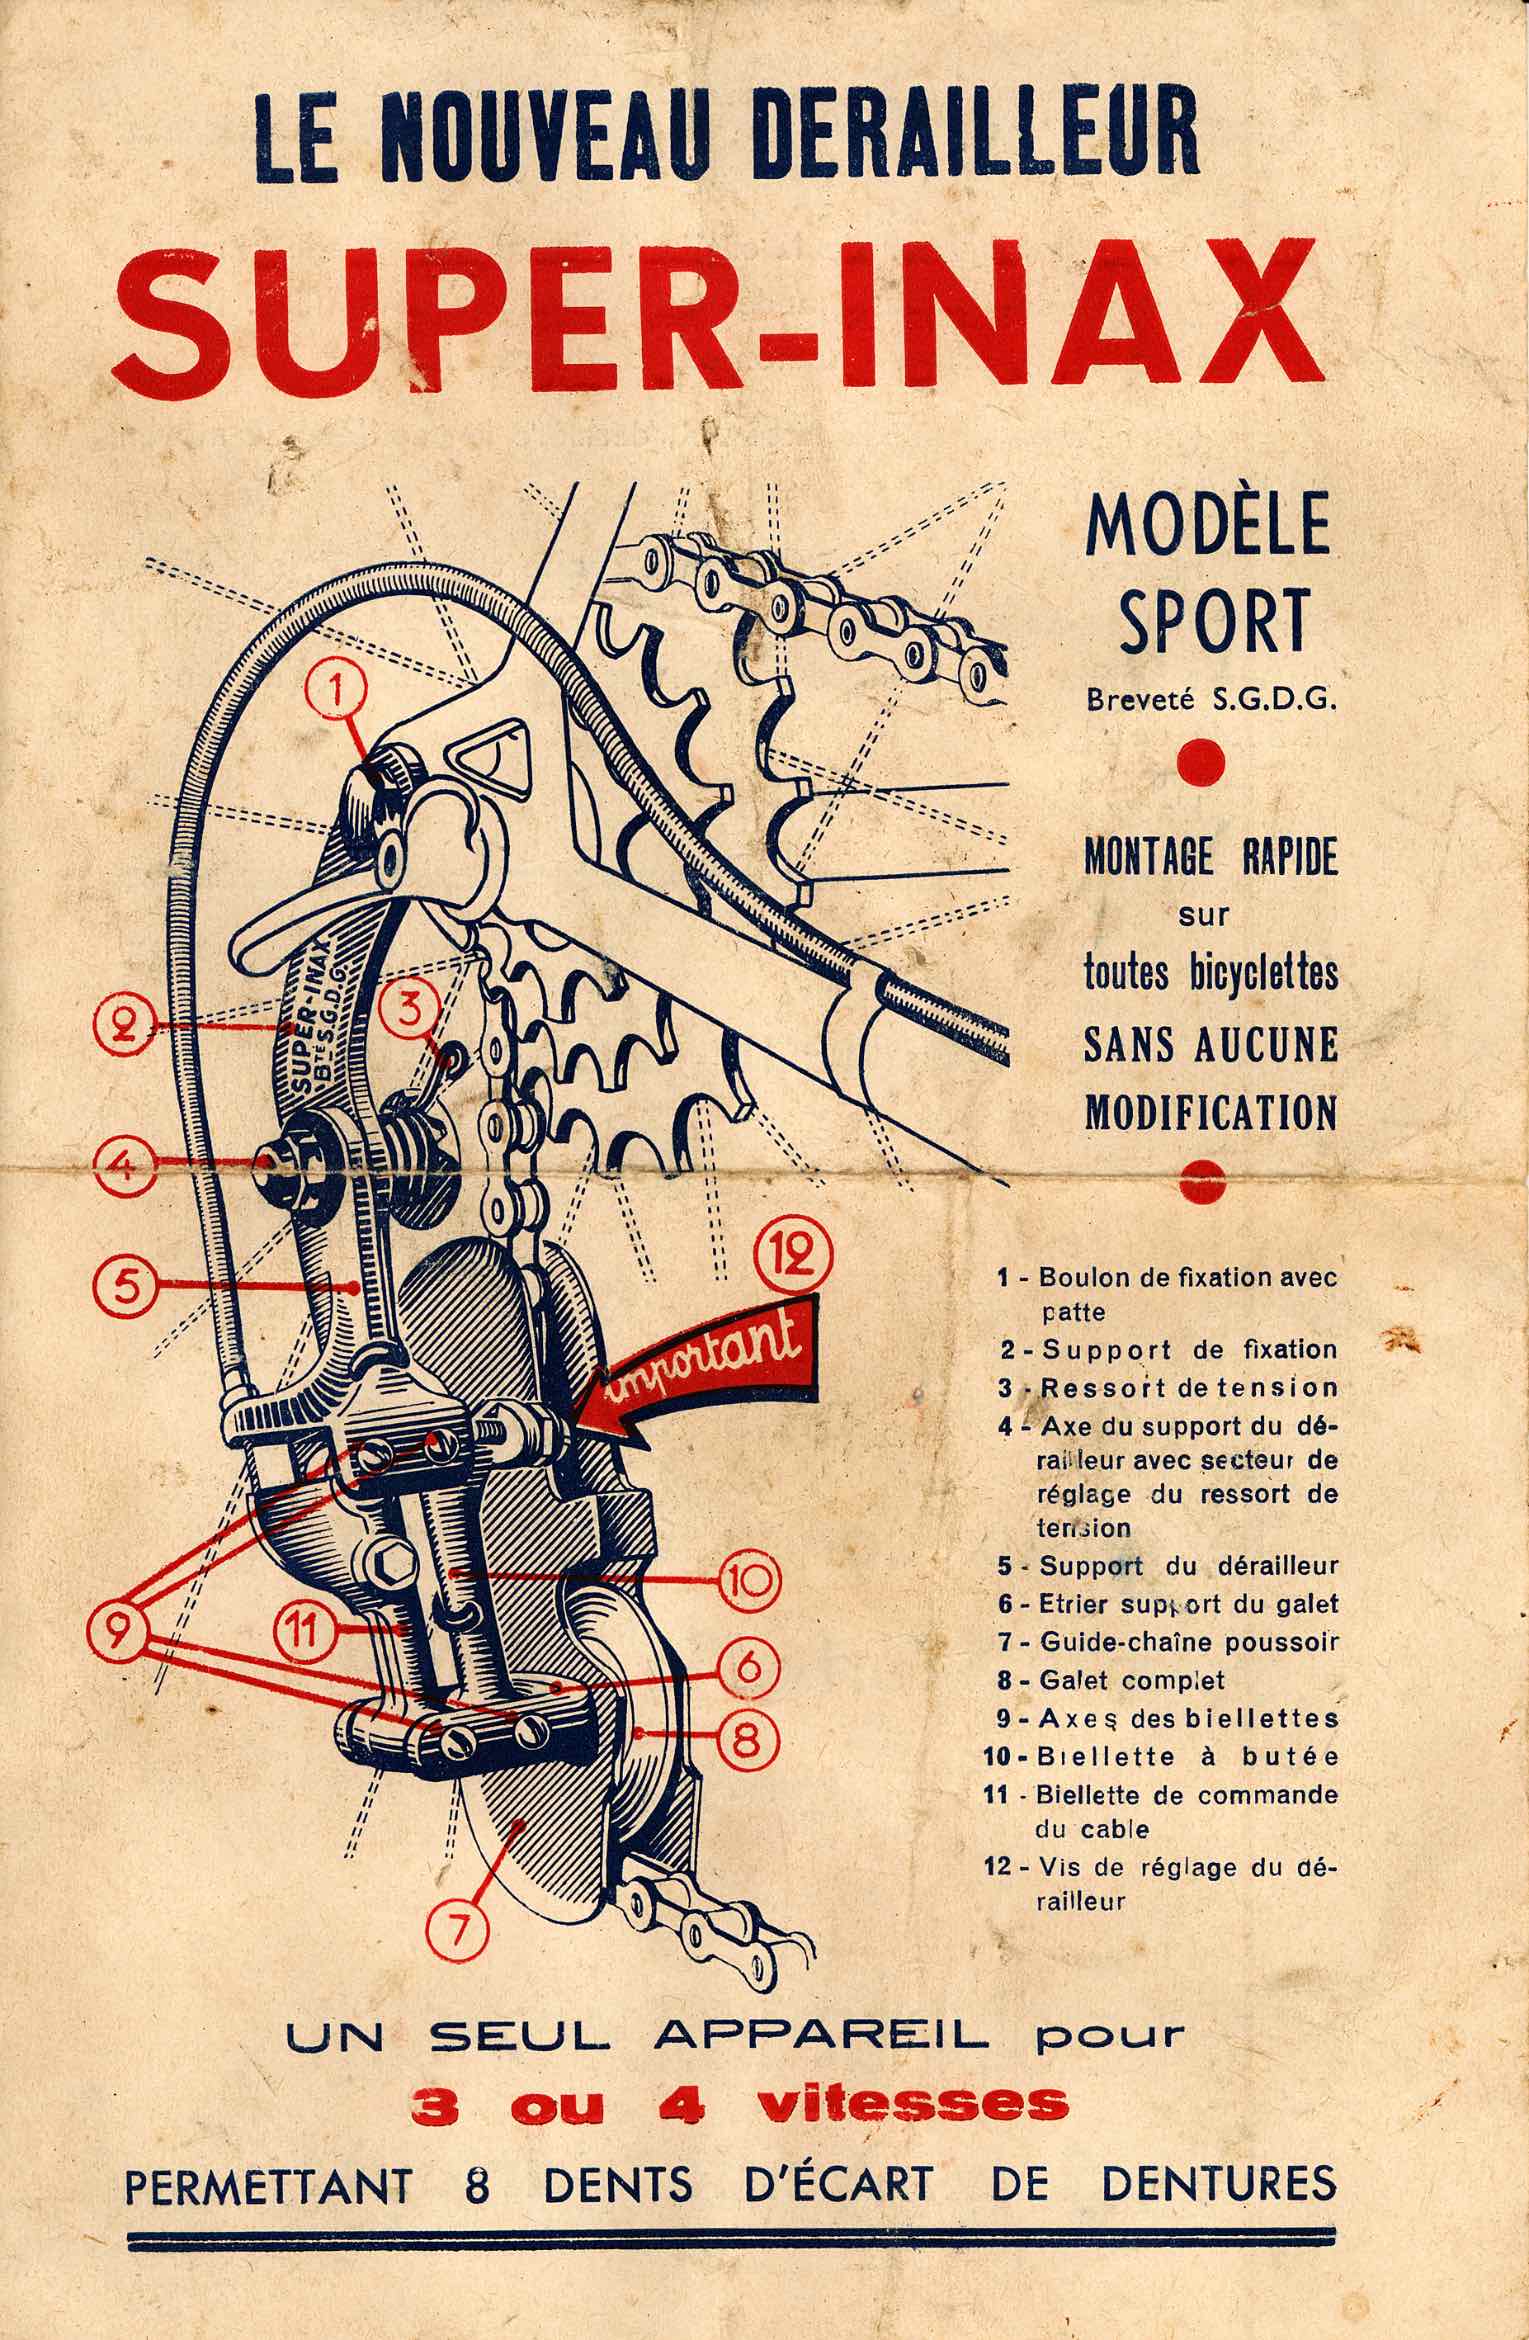 Le Nouveau Derailleur Super-Inax Modele Sport - scan 1 main image